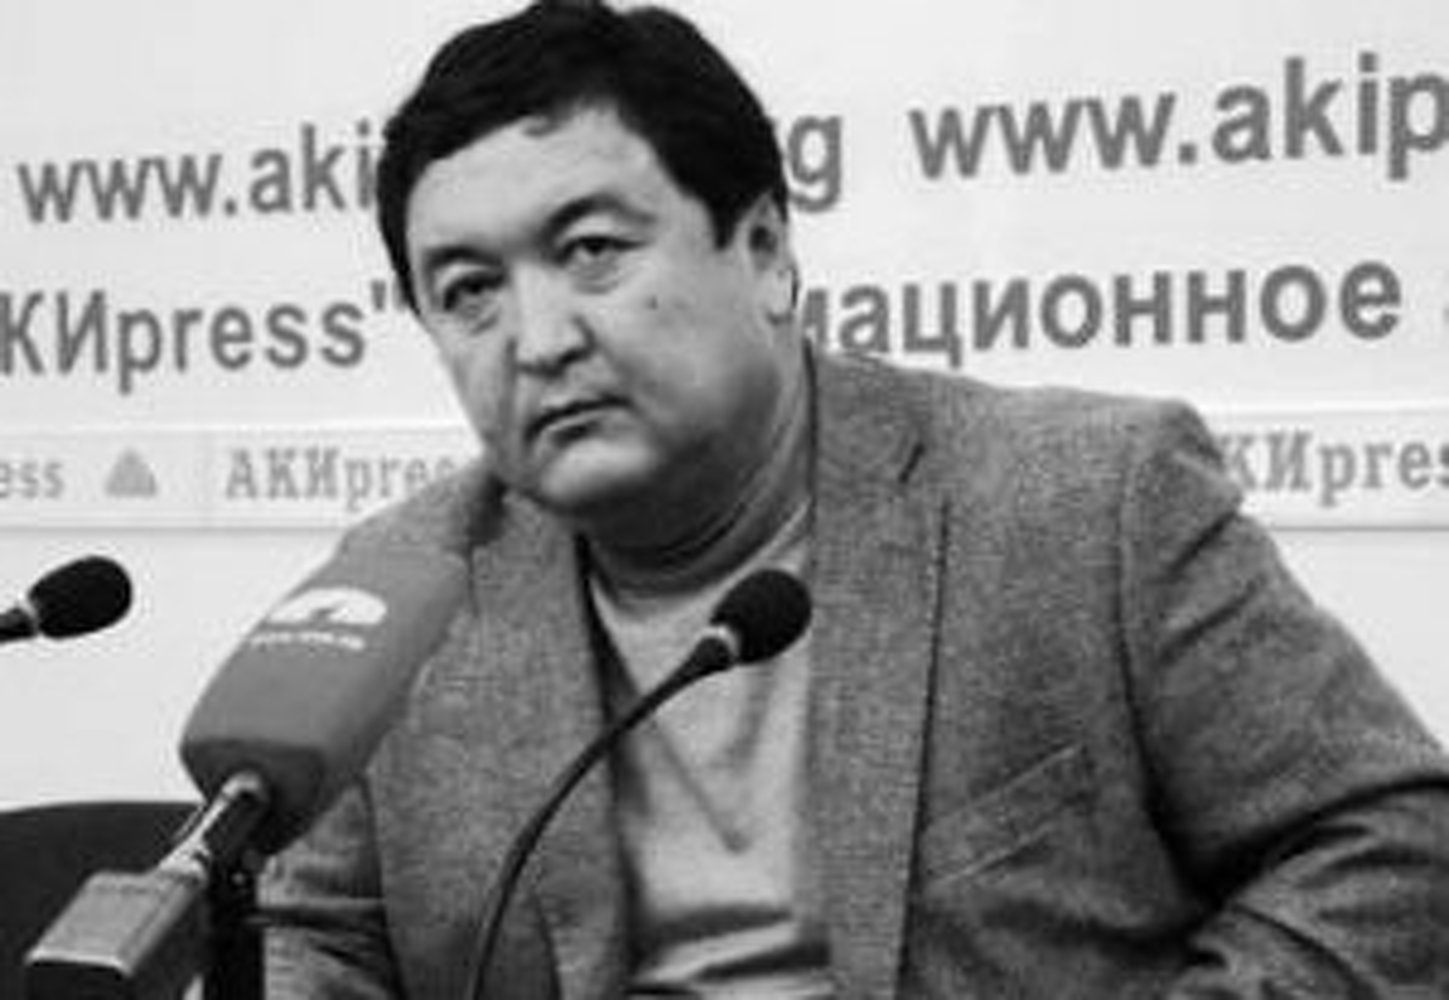 ГУВД Бишкека разыскивает пострадавших от действий адвоката Икрамидина Айткулова — Today.kg